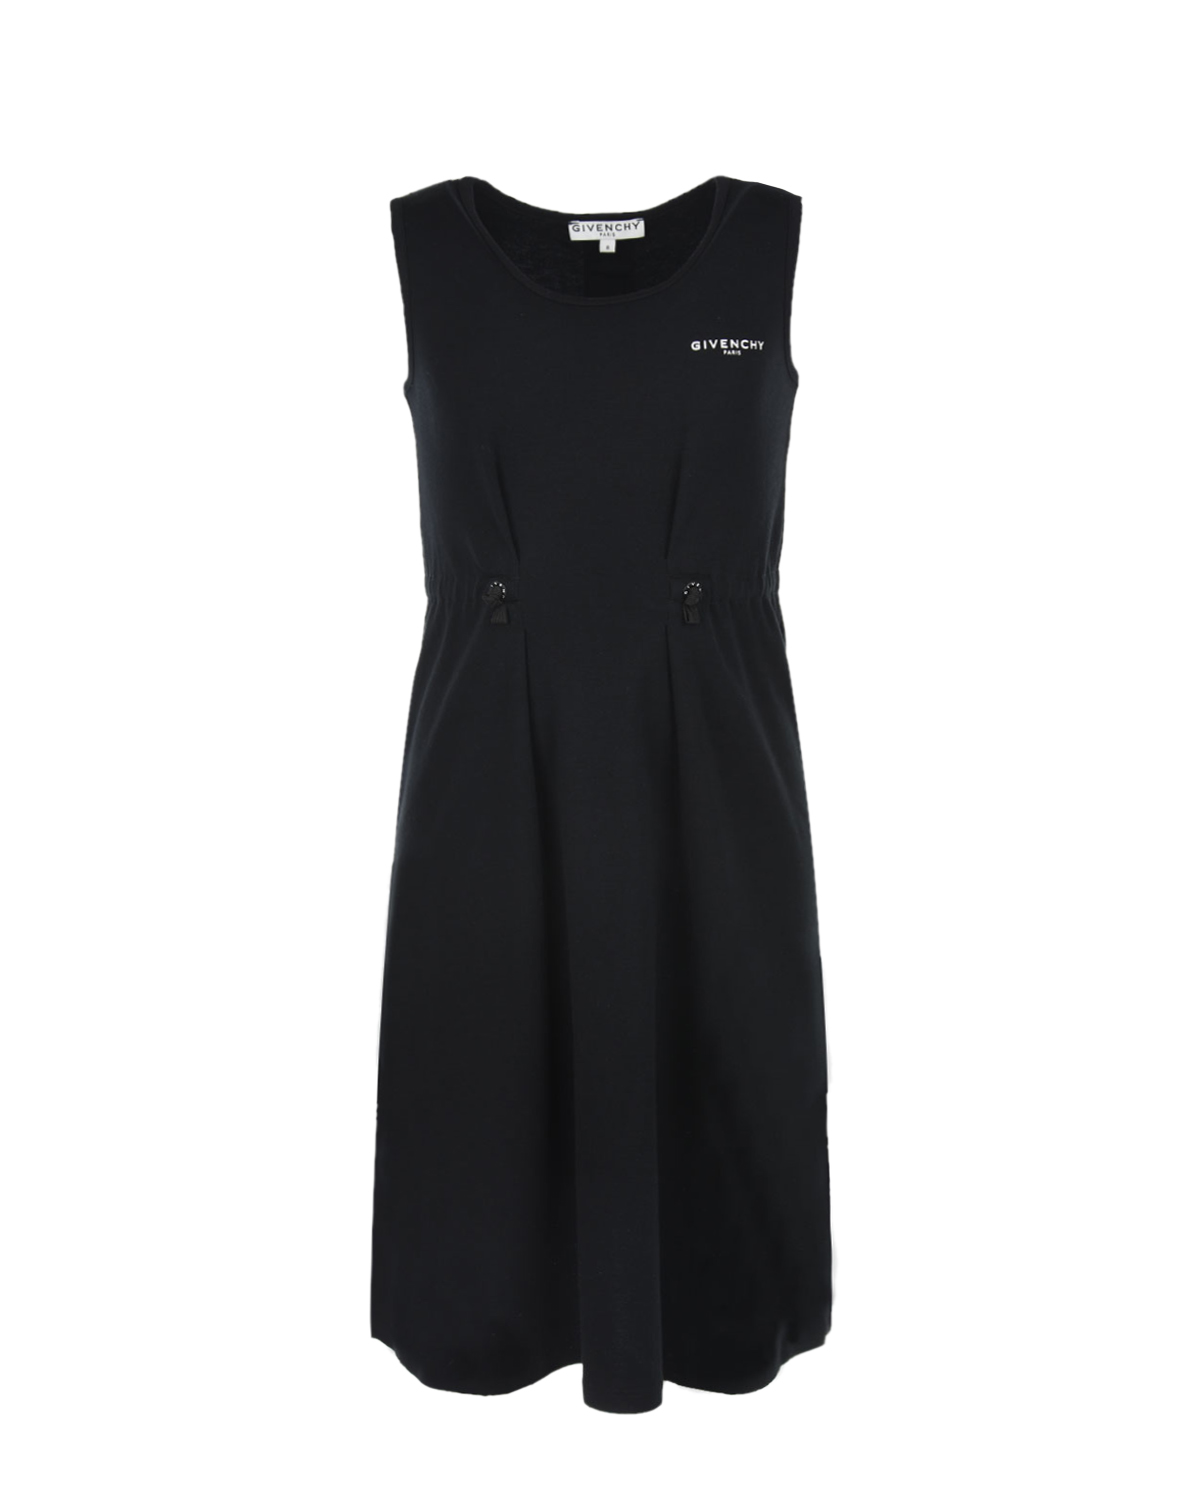 Черное платье с конрастной отделкой на спинке Givenchy детское, размер 128, цвет черный - фото 1